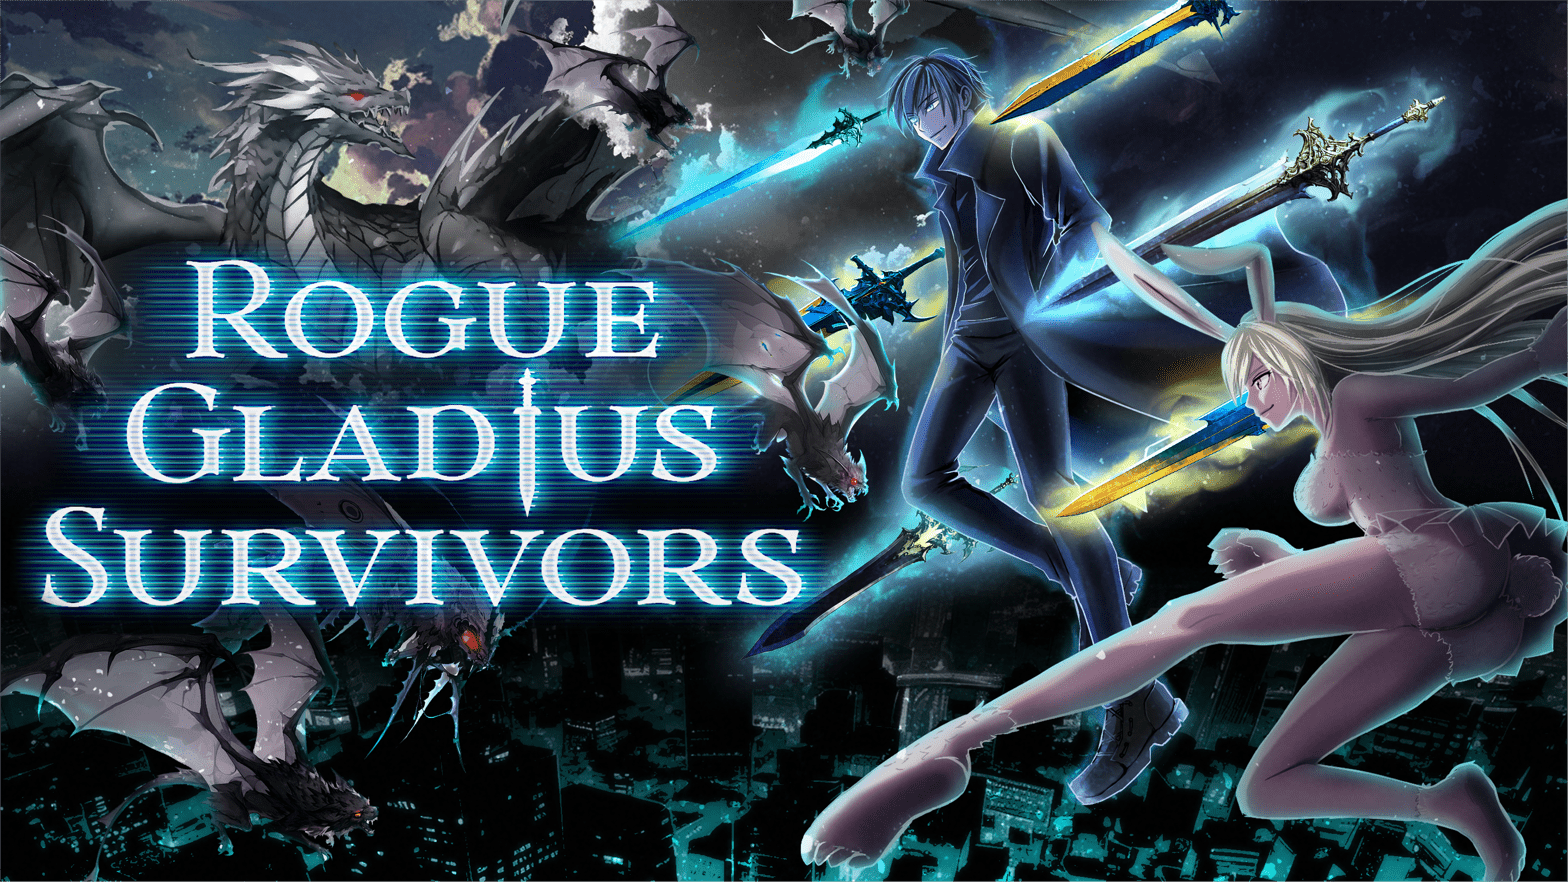 政府と契約を交わした能力者が戦うアクションゲーム『Rogue Gladius Survivors』発表_006